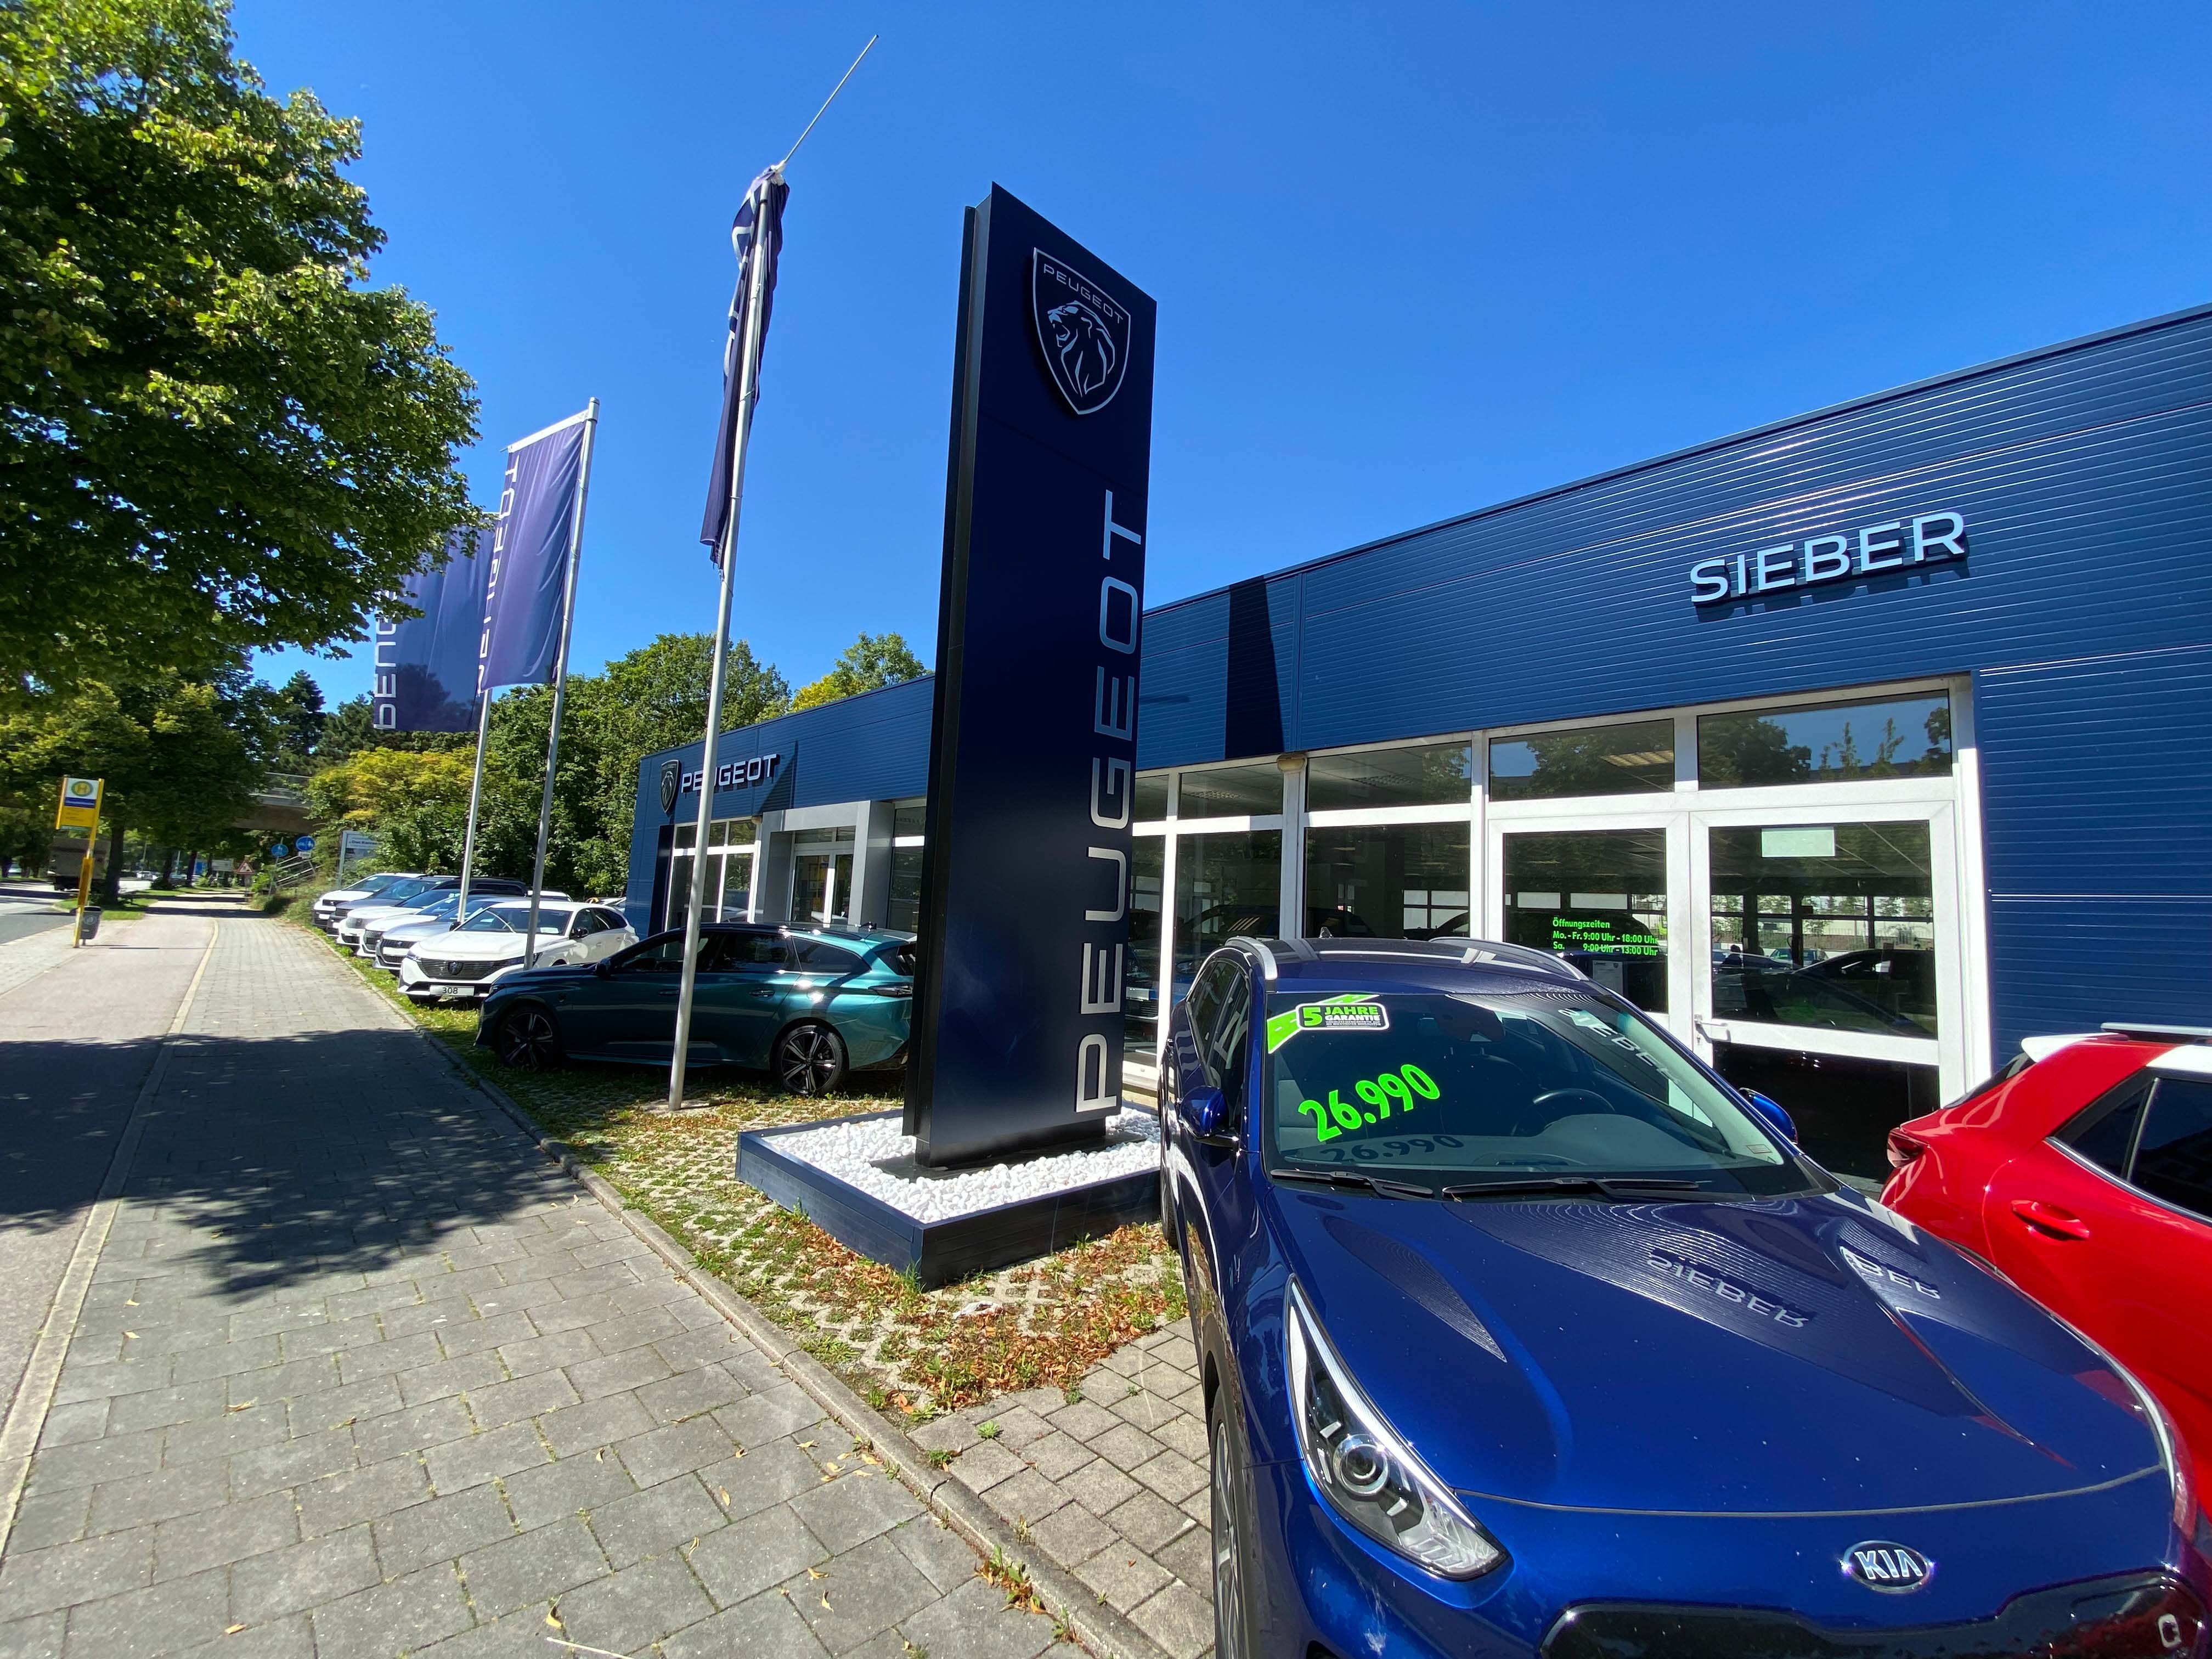 Fotos - Sieber Automobile GmbH & Co. KG - 6